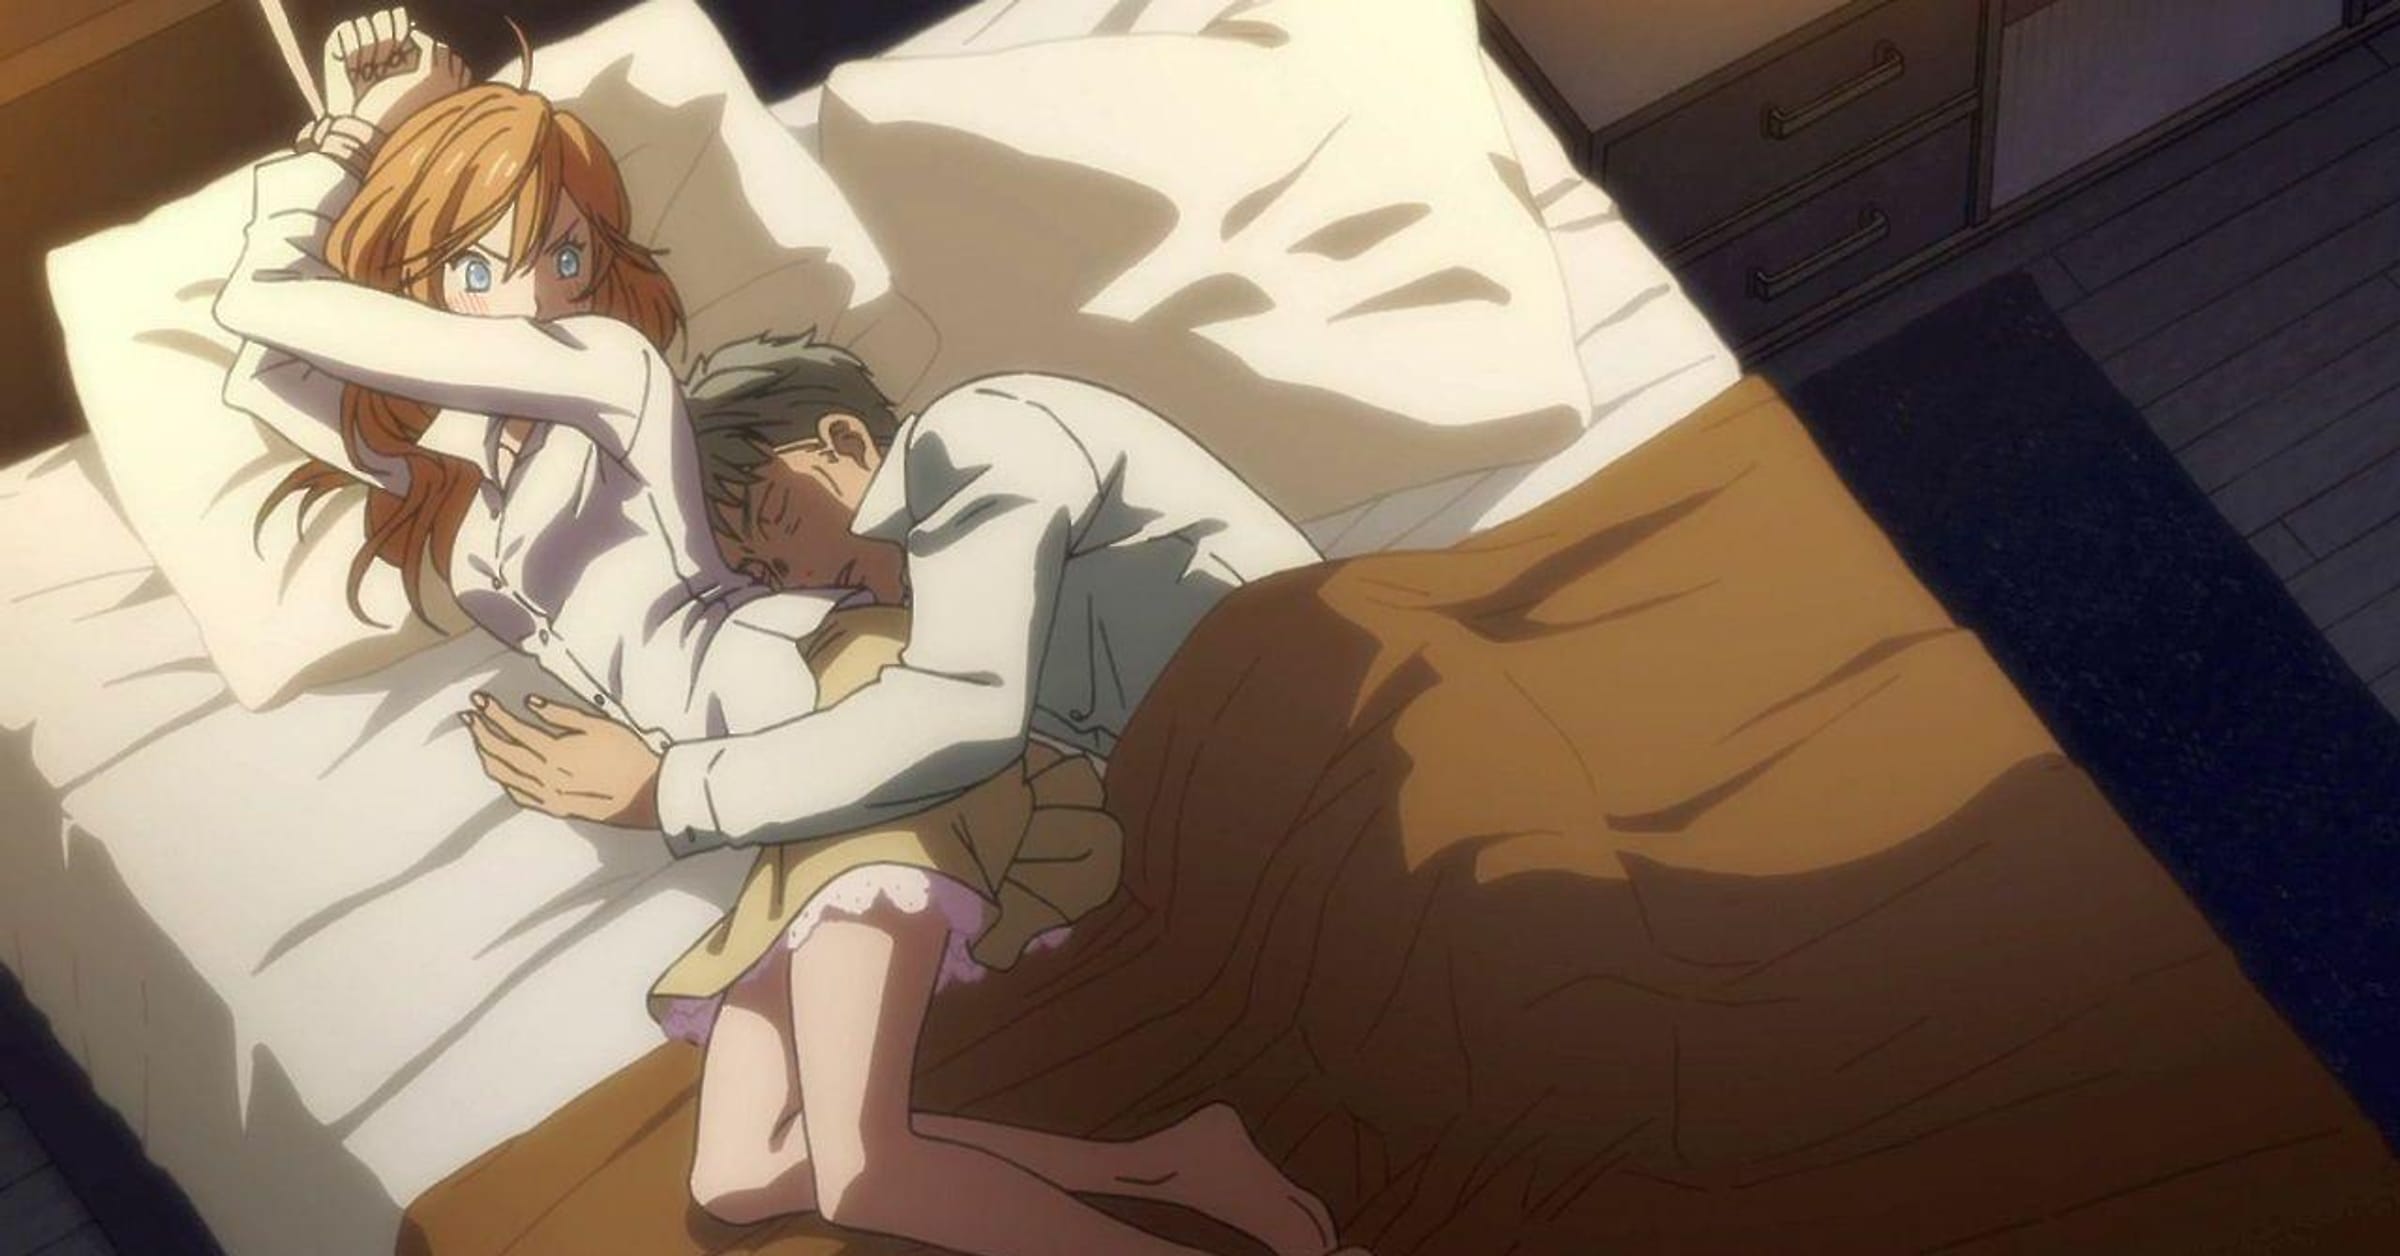 7 Hug and kiss anime ideas  anime, anime romance, cute anime couples